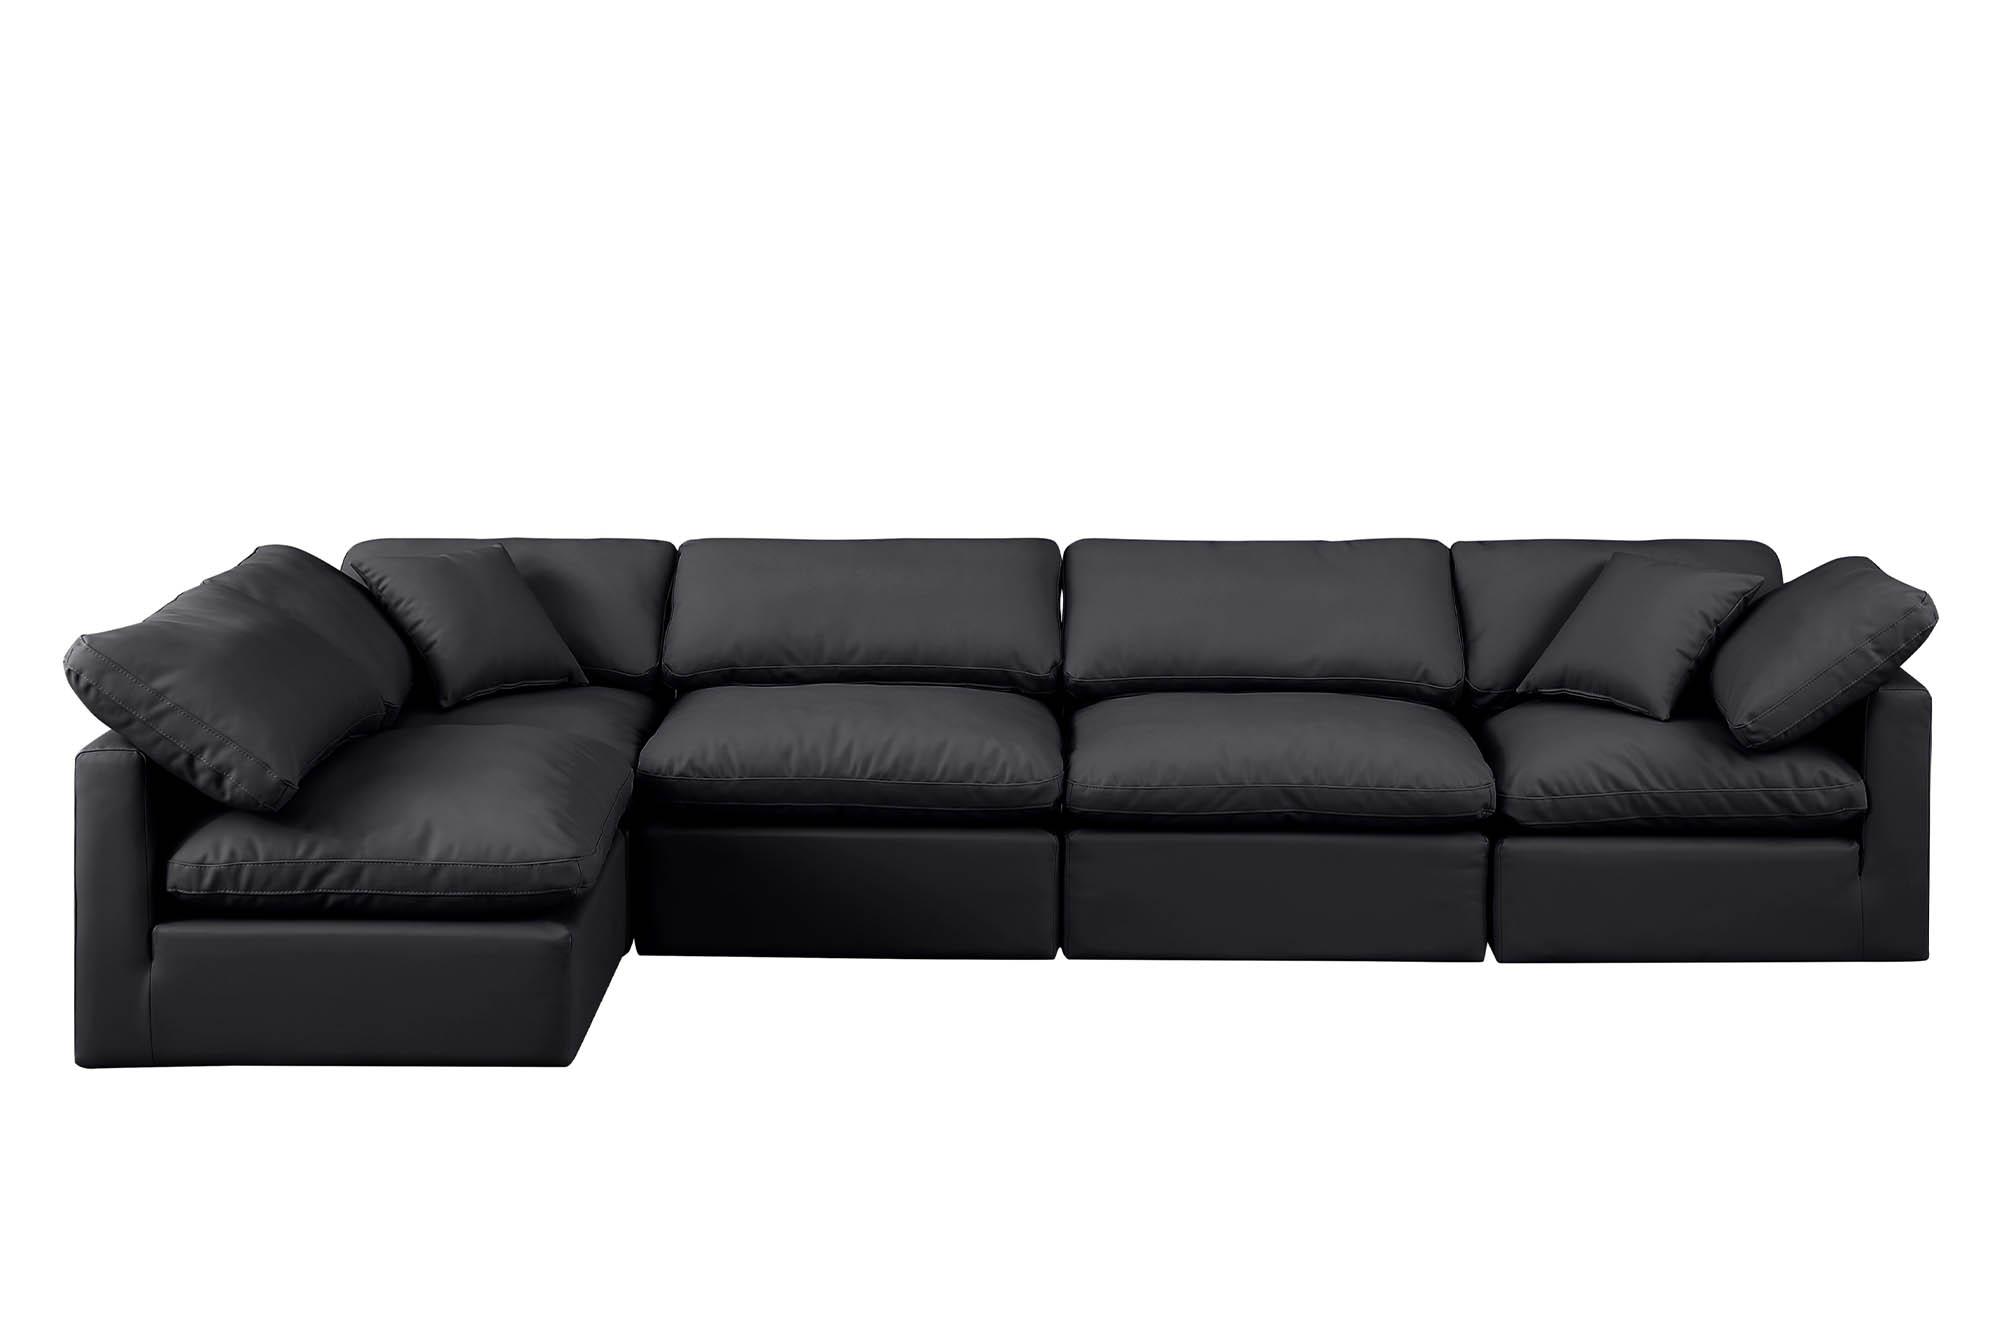 

    
Meridian Furniture INDULGE 146Black-Sec5D Modular Sectional Sofa Black 146Black-Sec5D
